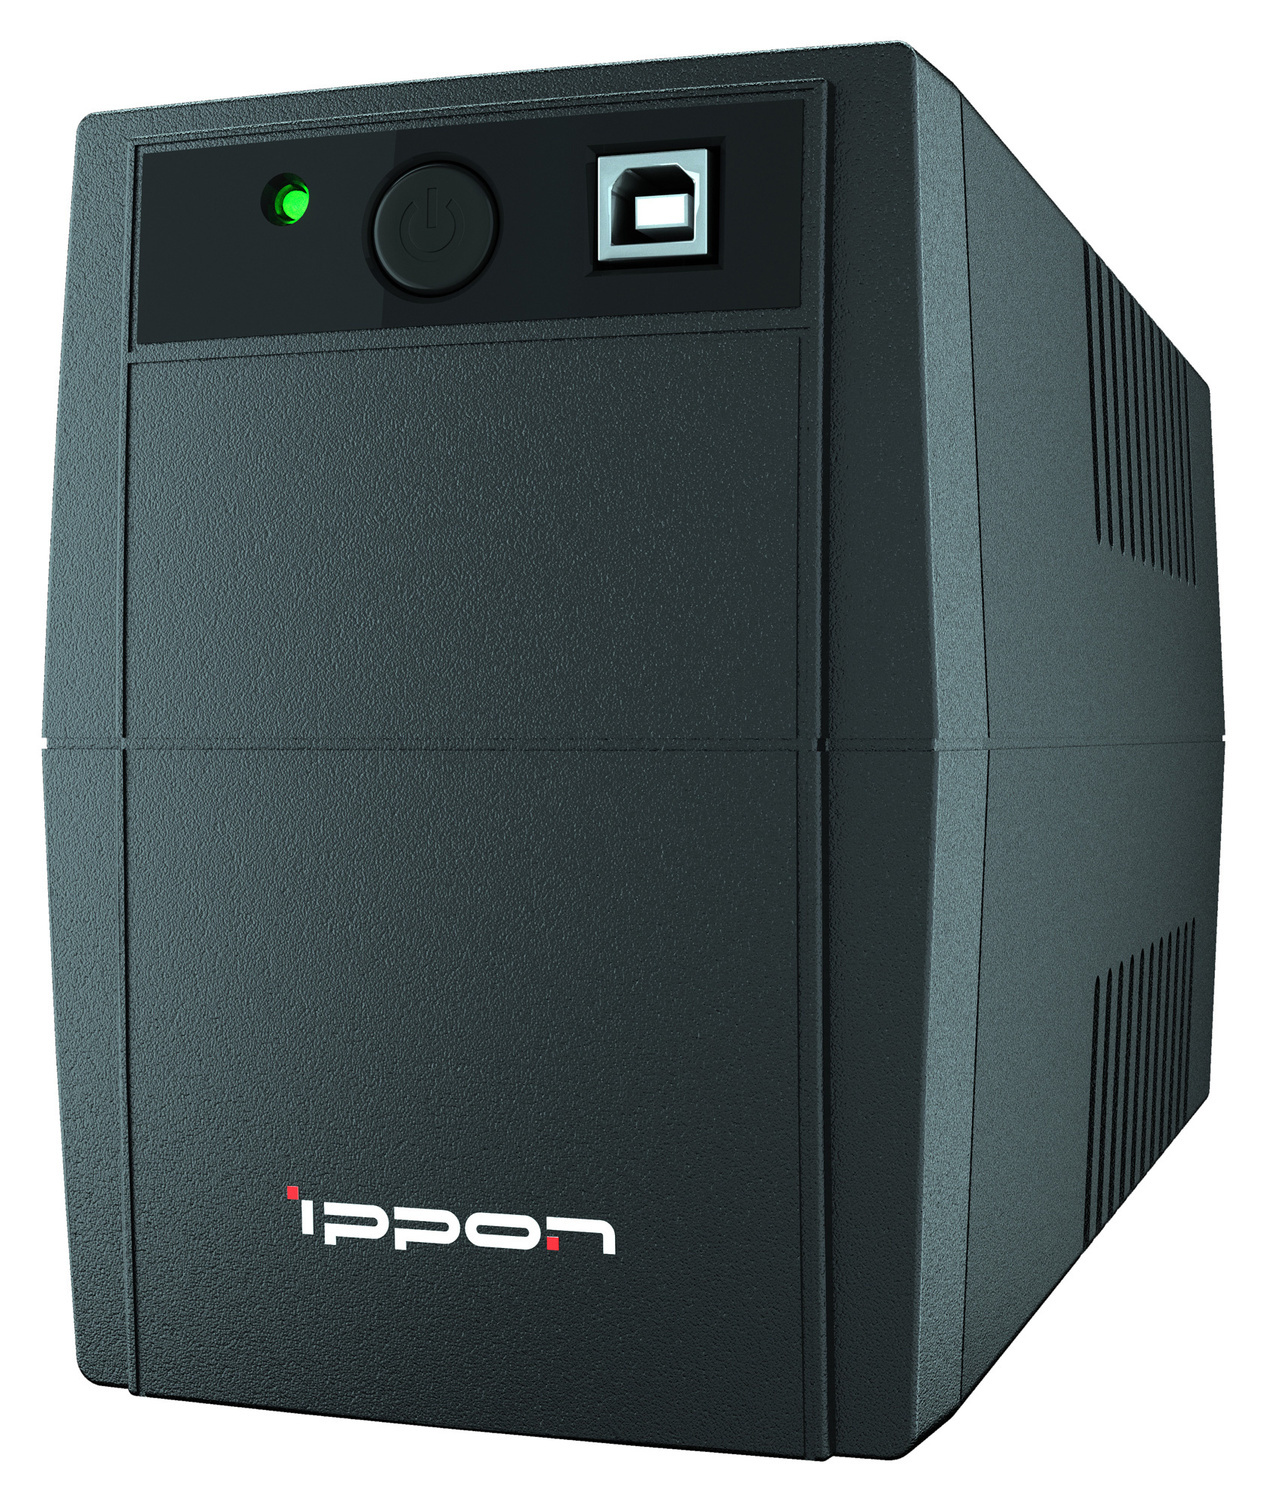  Ippon Back Basic 650S Euro 650VA (1373874)